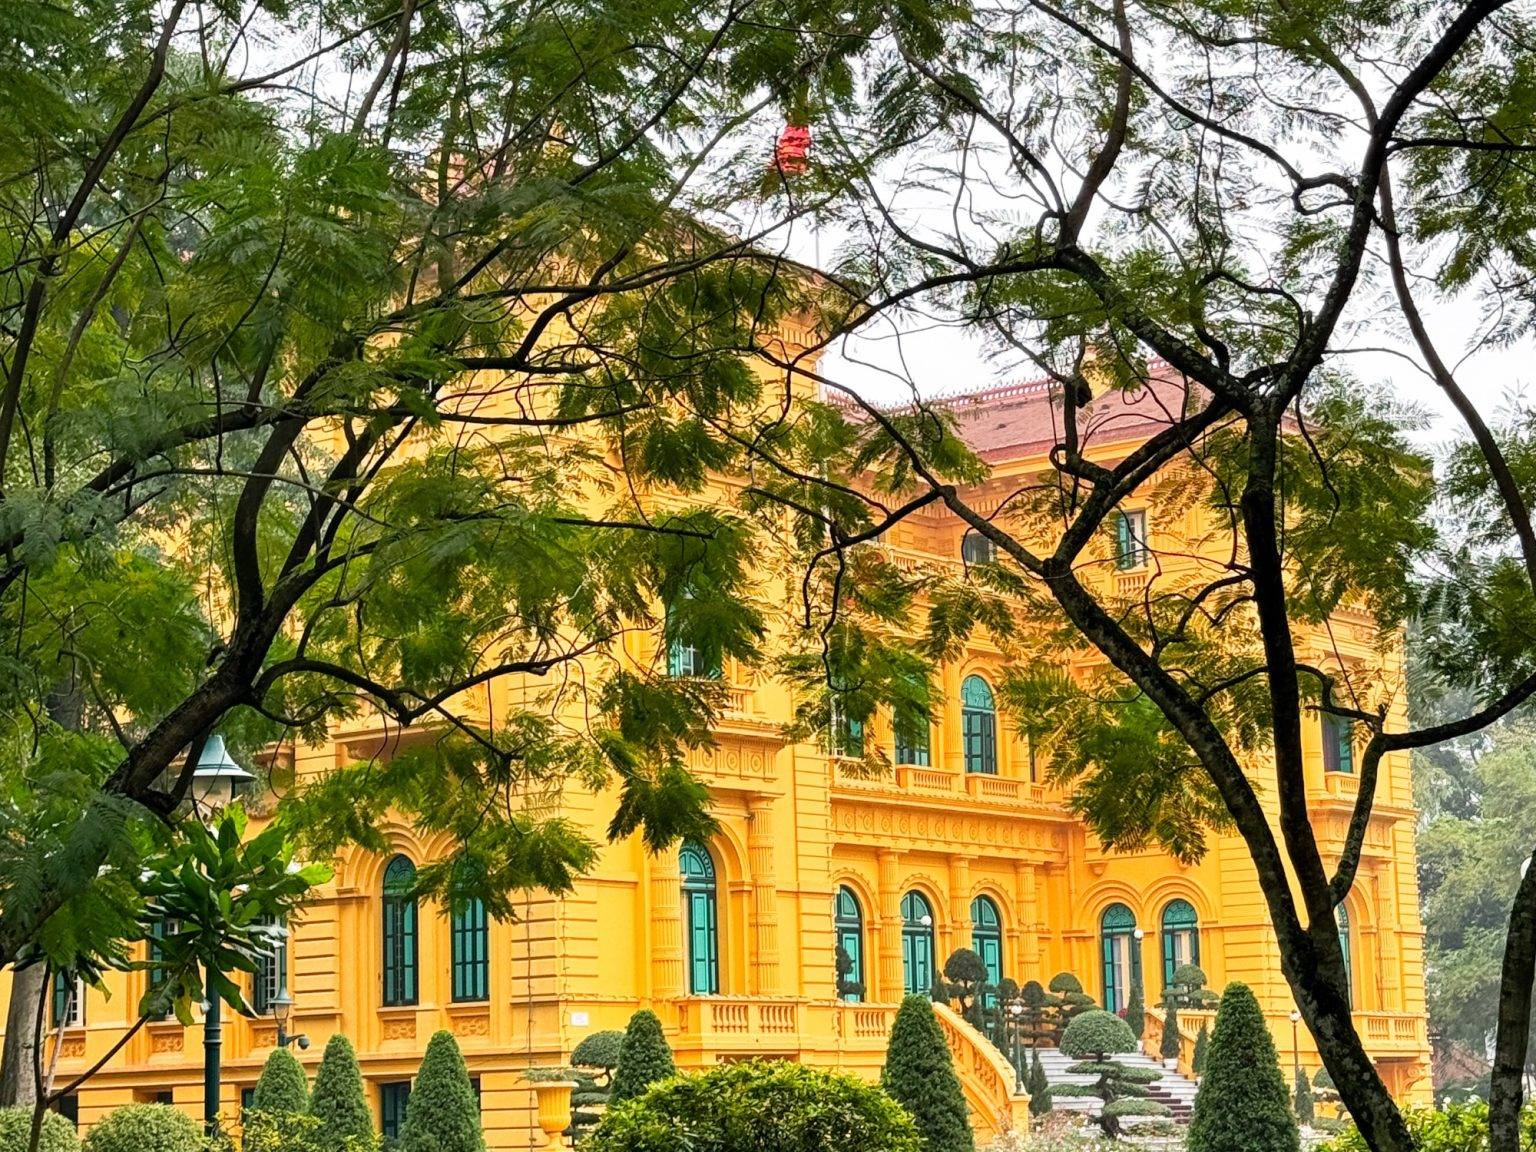 Der Präsidentenpalast Phu Chu tich hinter Bäumen.